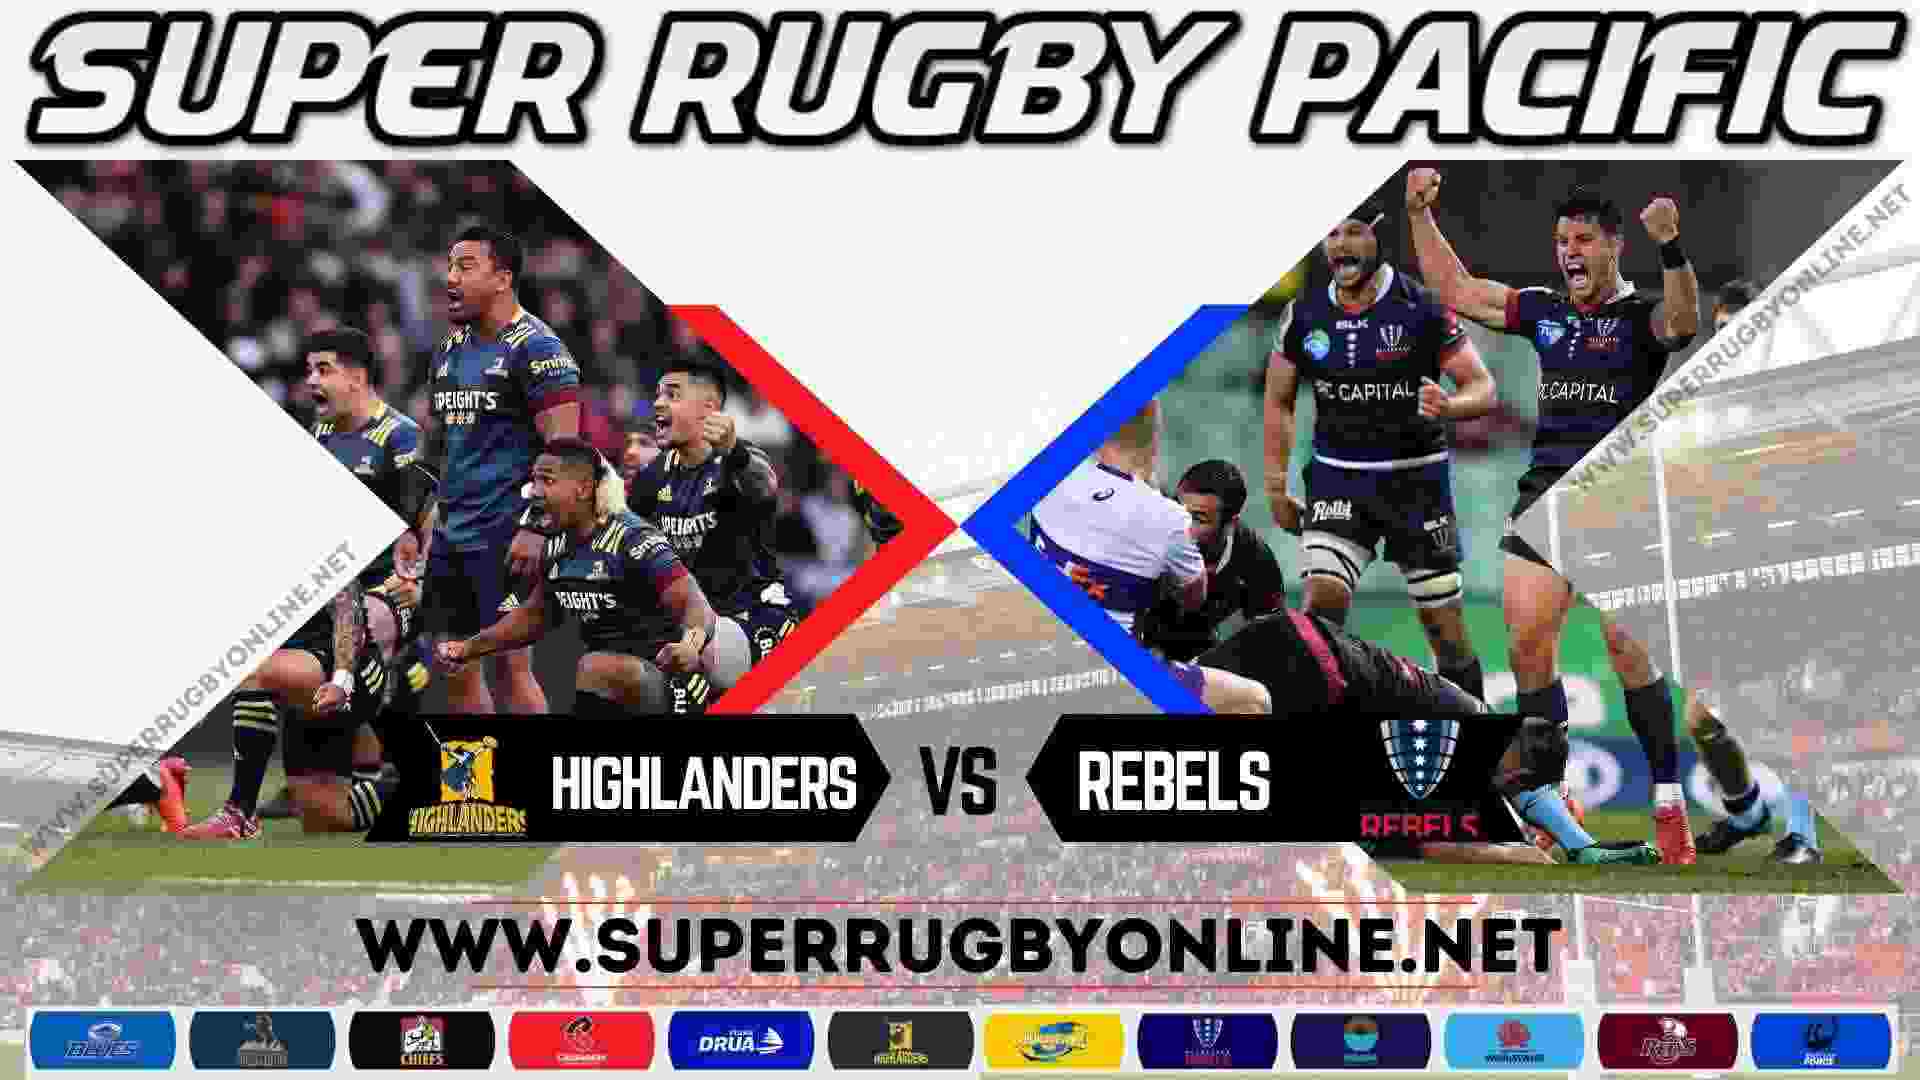 Highlanders VS Rebels Super Rugby Live Stream